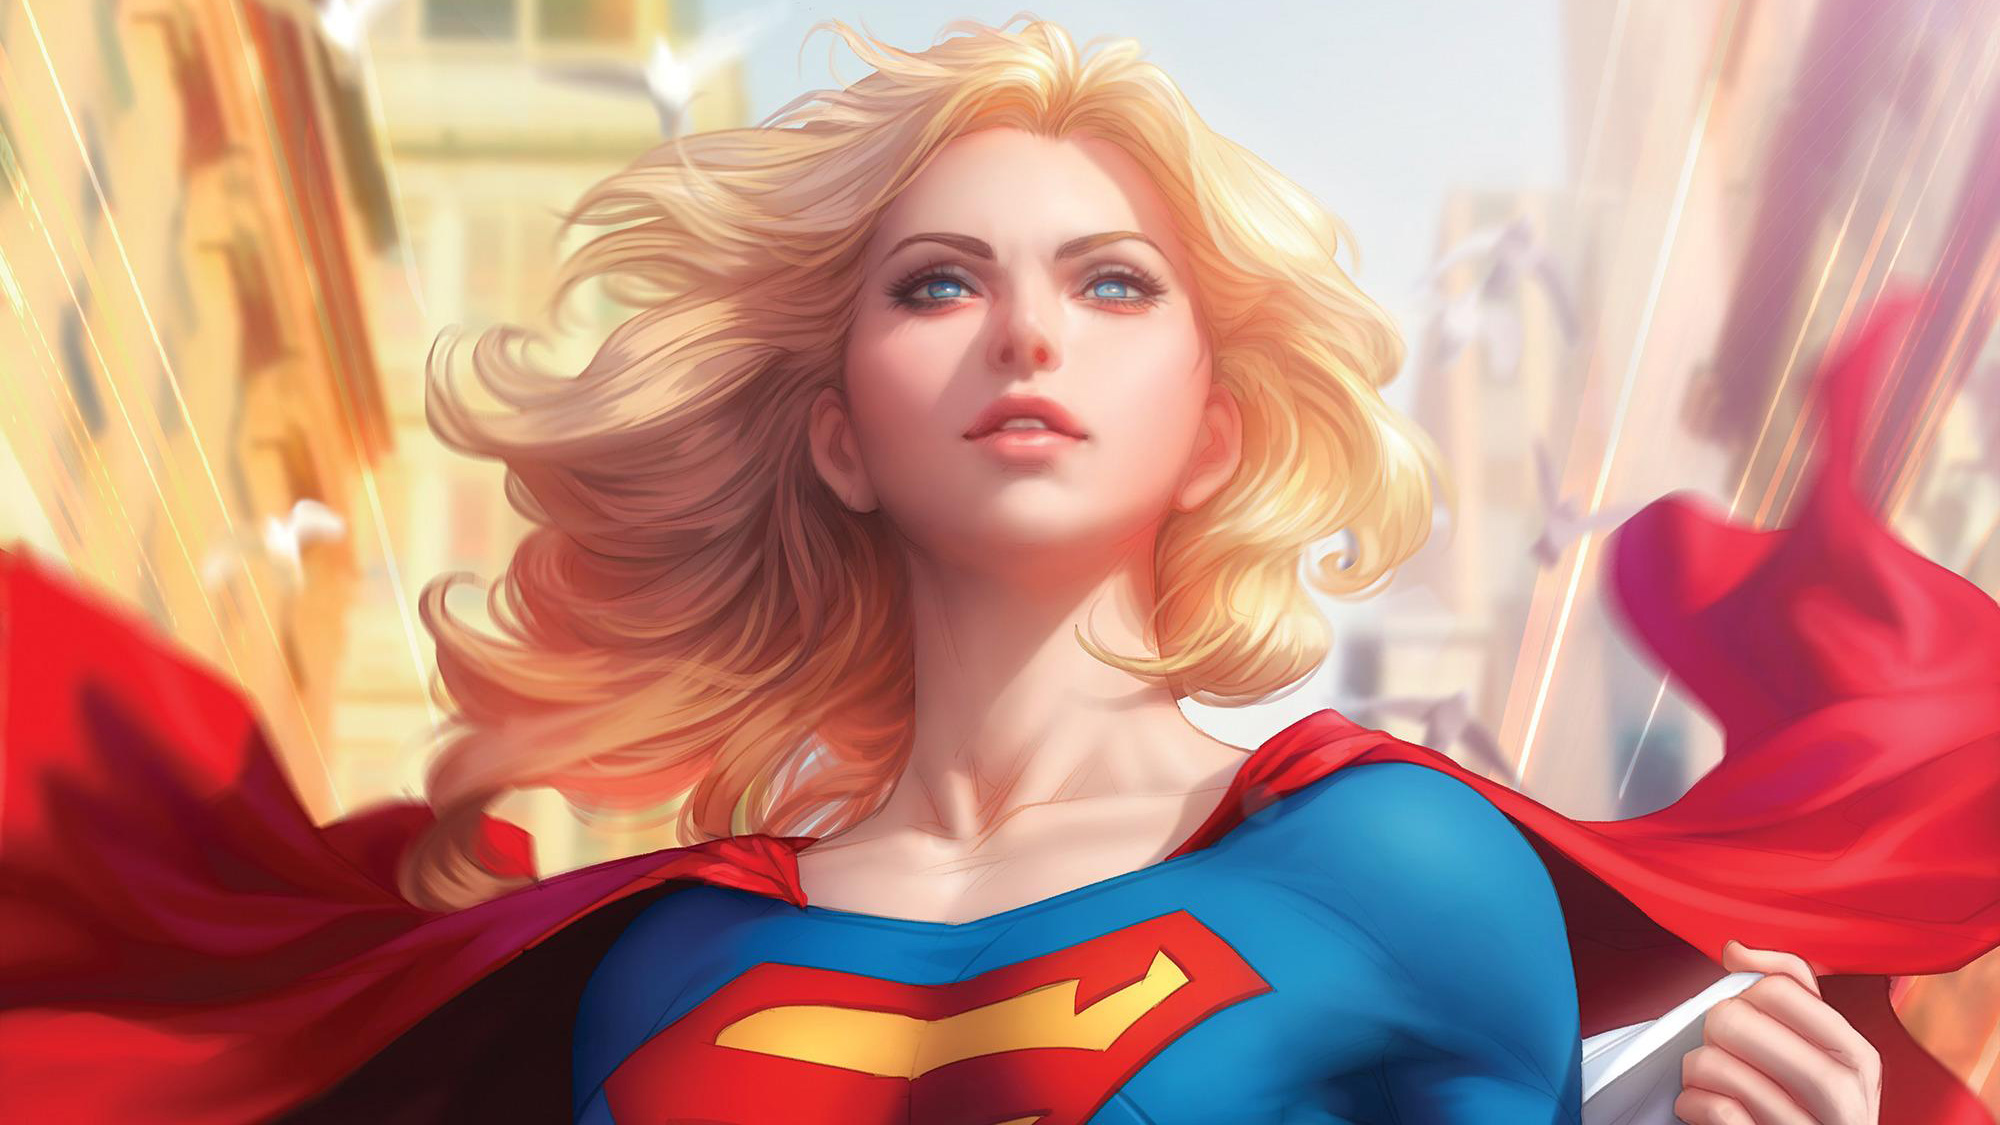 Art Of Supergirl, HD Superheroes, 4k